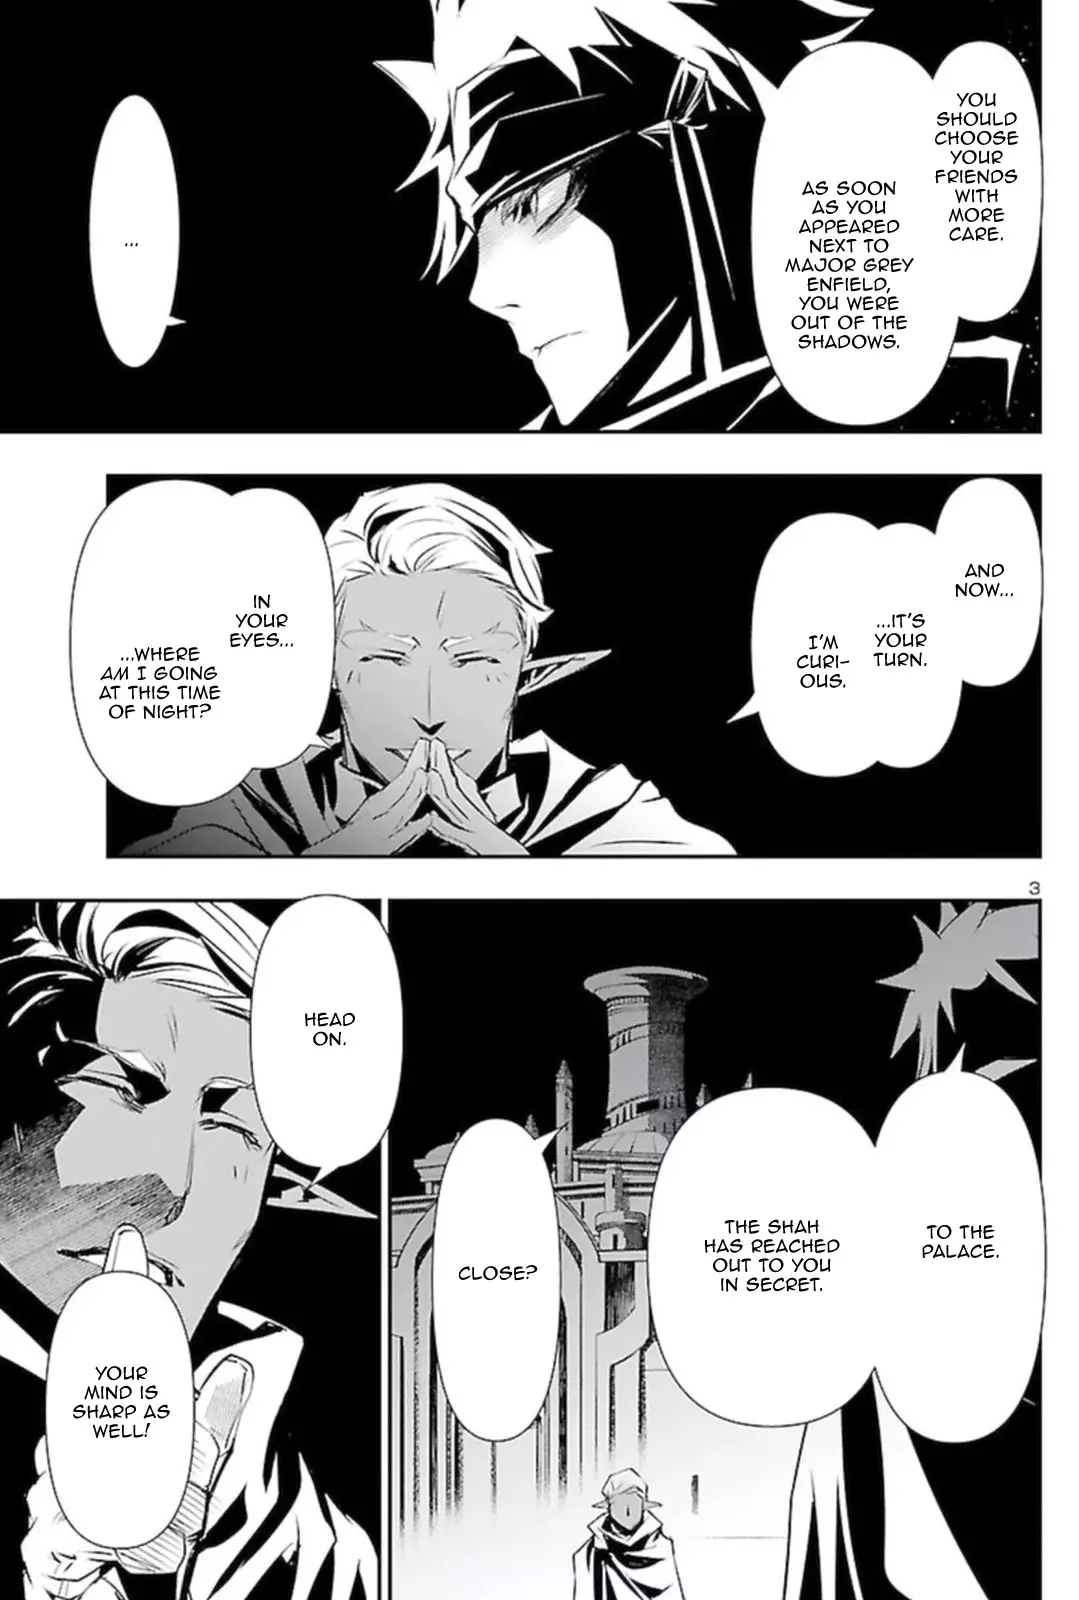 Shinju no Nectar - 54 page 2